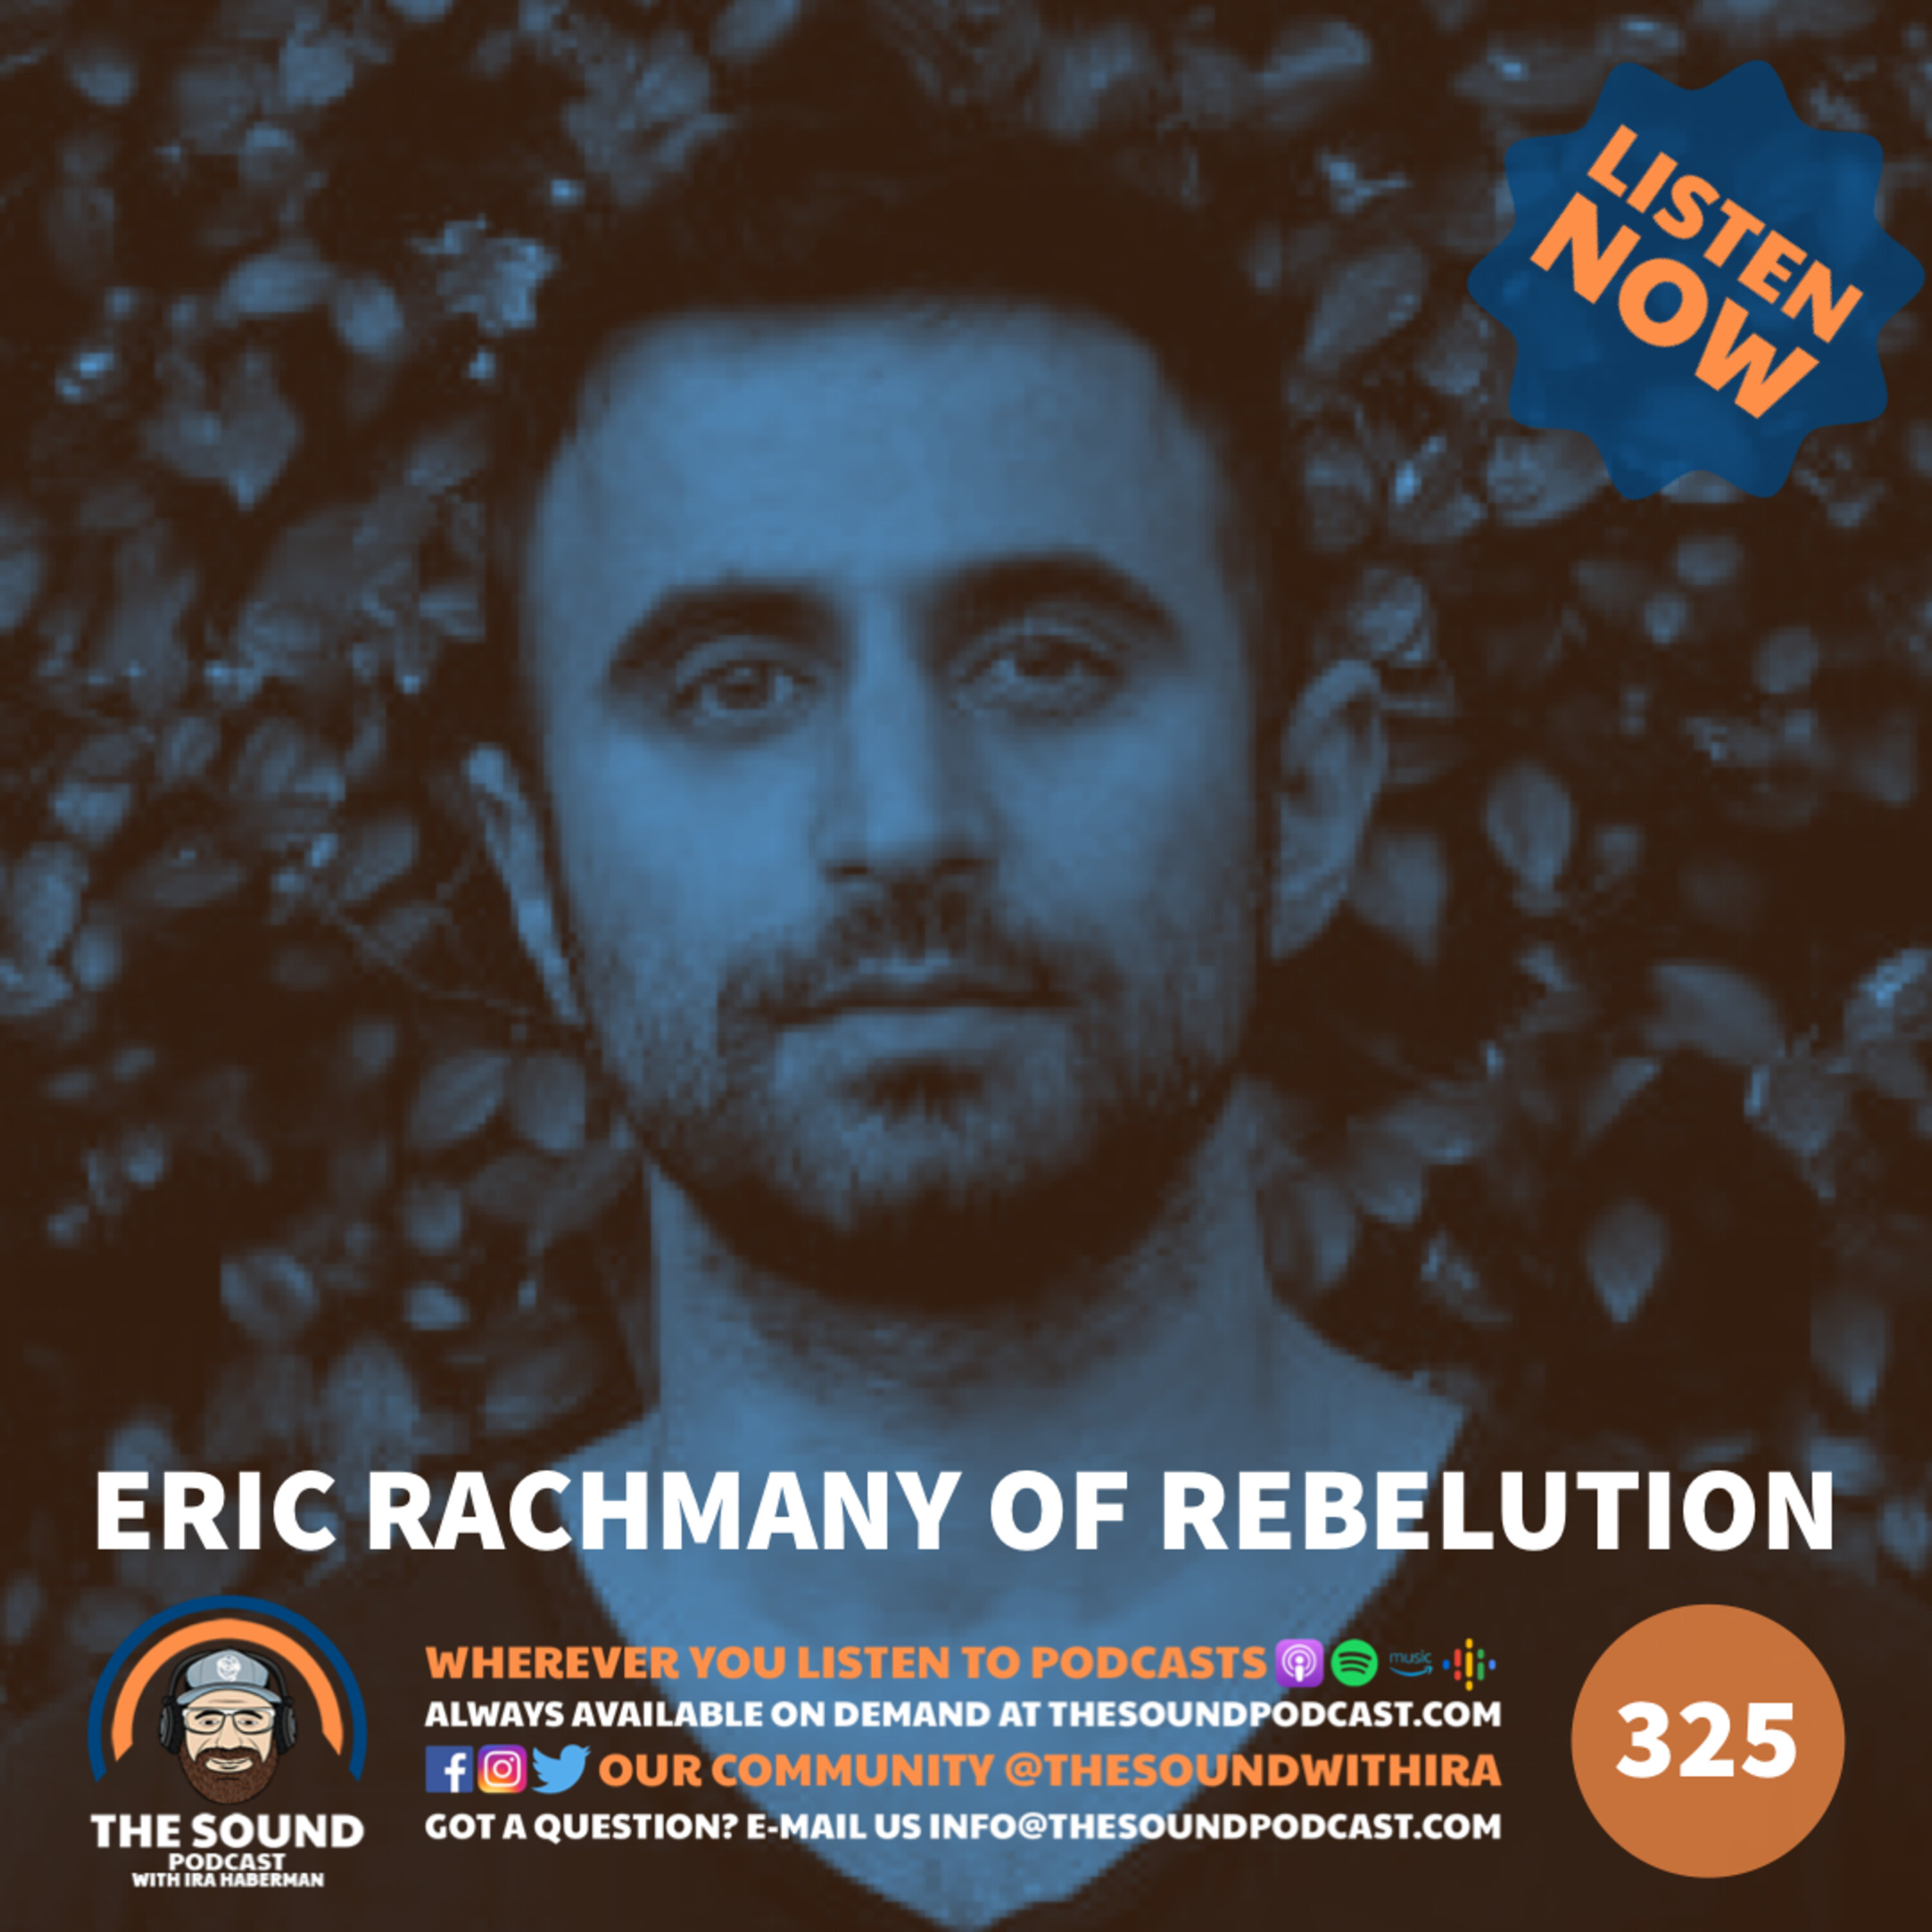 Eric Rachmany of Rebelution Image